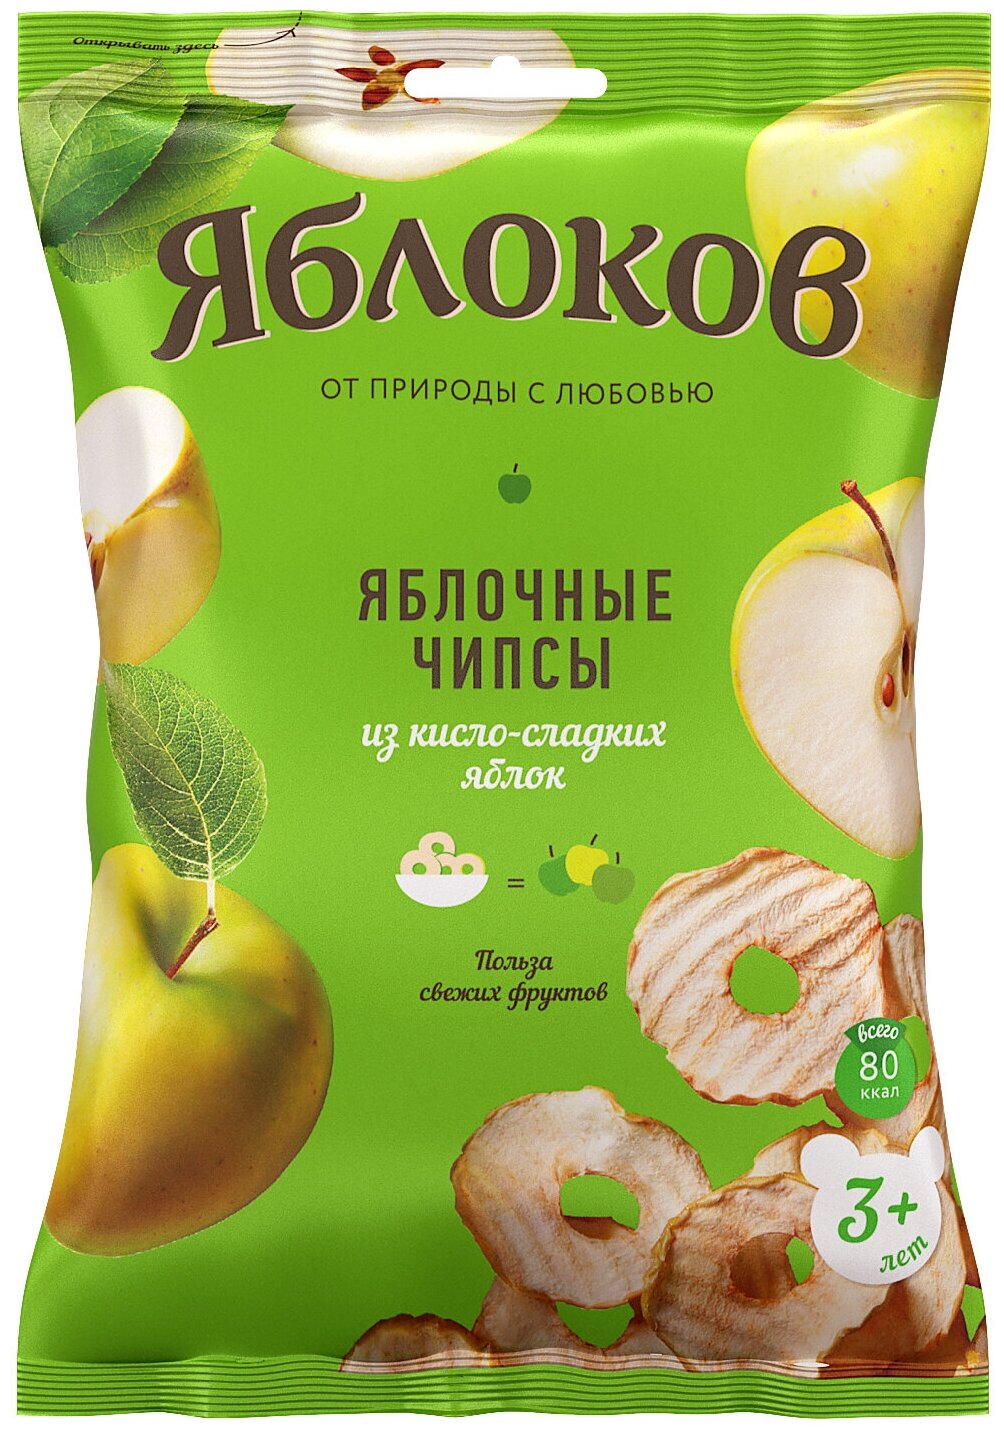 Яблочные чипсы из кисло-сладких яблок «Яблоков», 25 гр